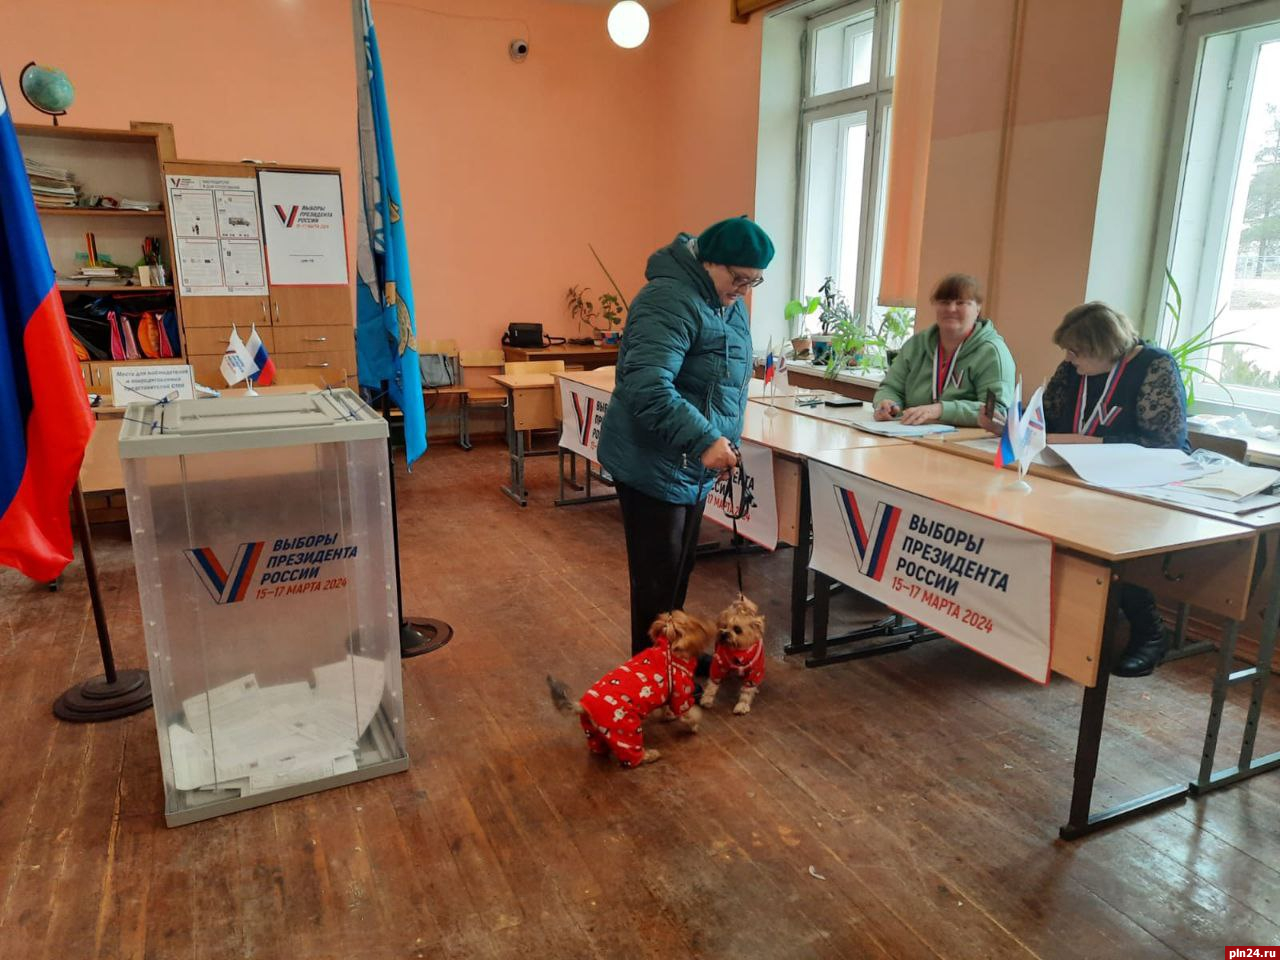 Явка на выборах президента России в Псковской области составила 15%